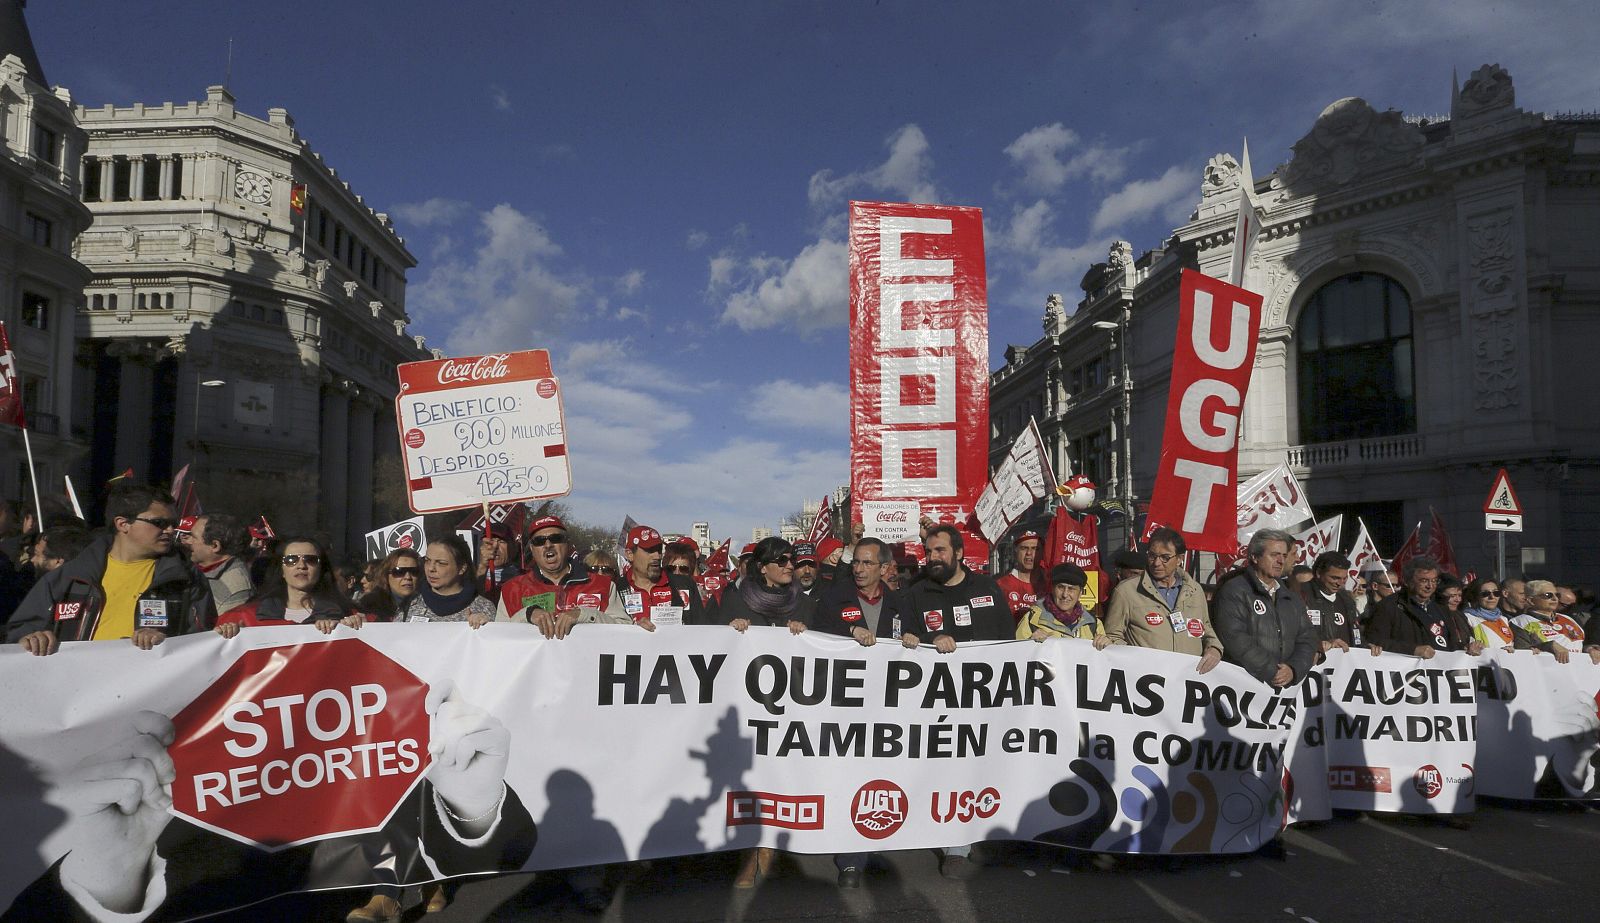 Cabecera de la manifestación contra las políticas de austeridad en Madrid